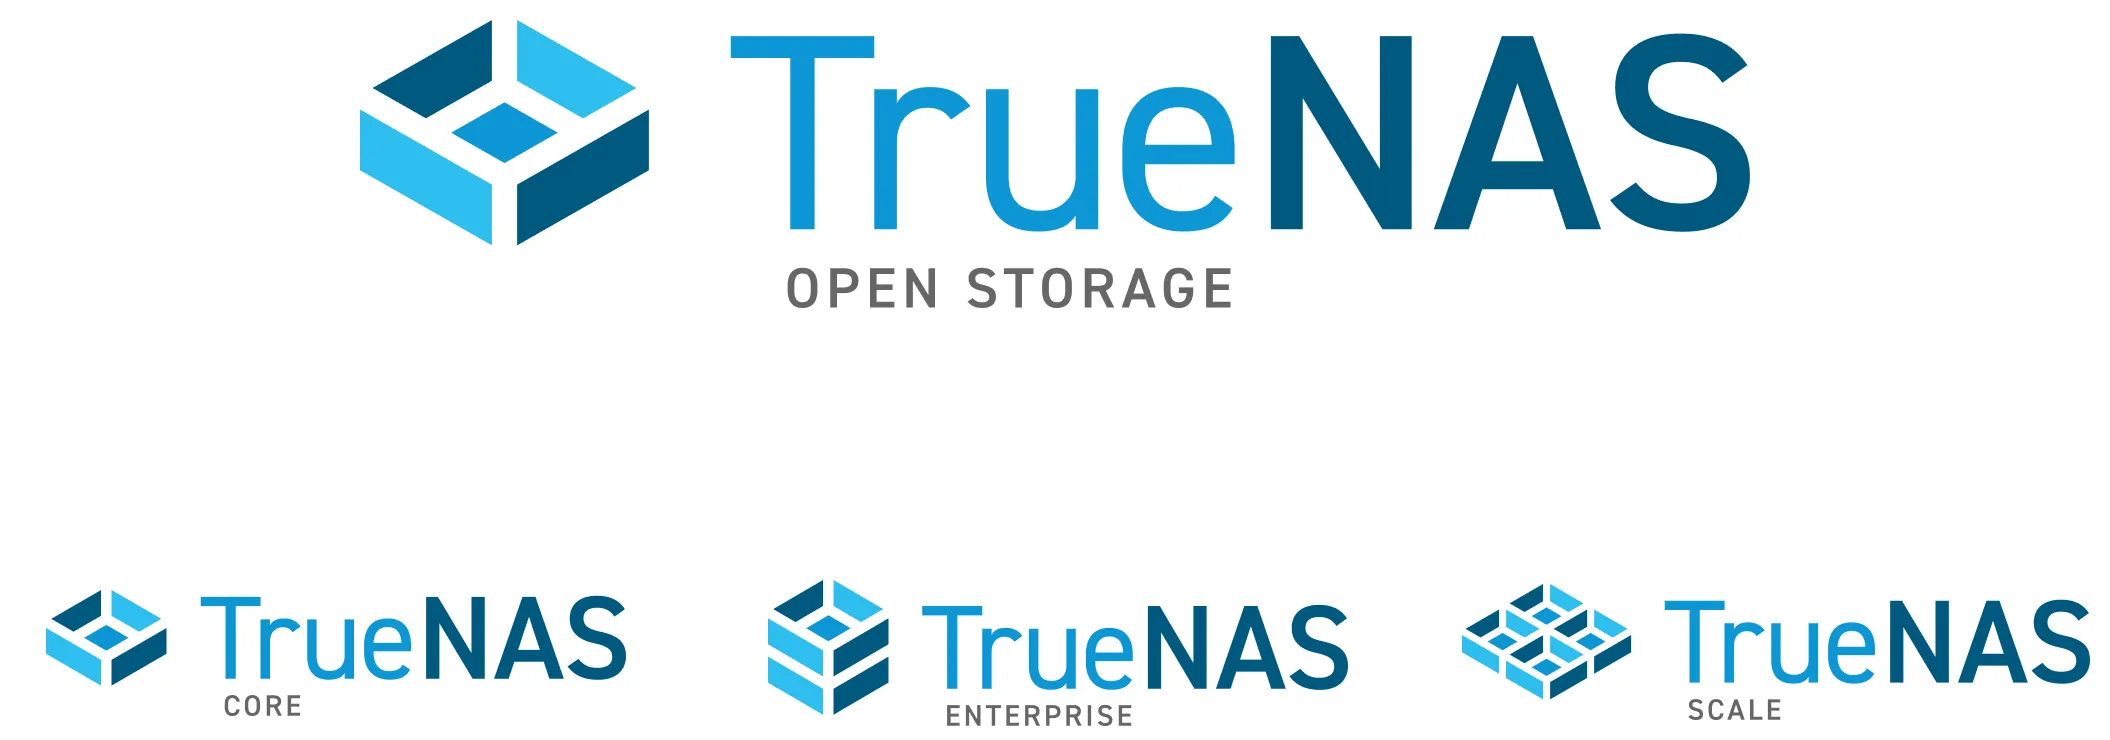 Image of TrueNAS final logo designs